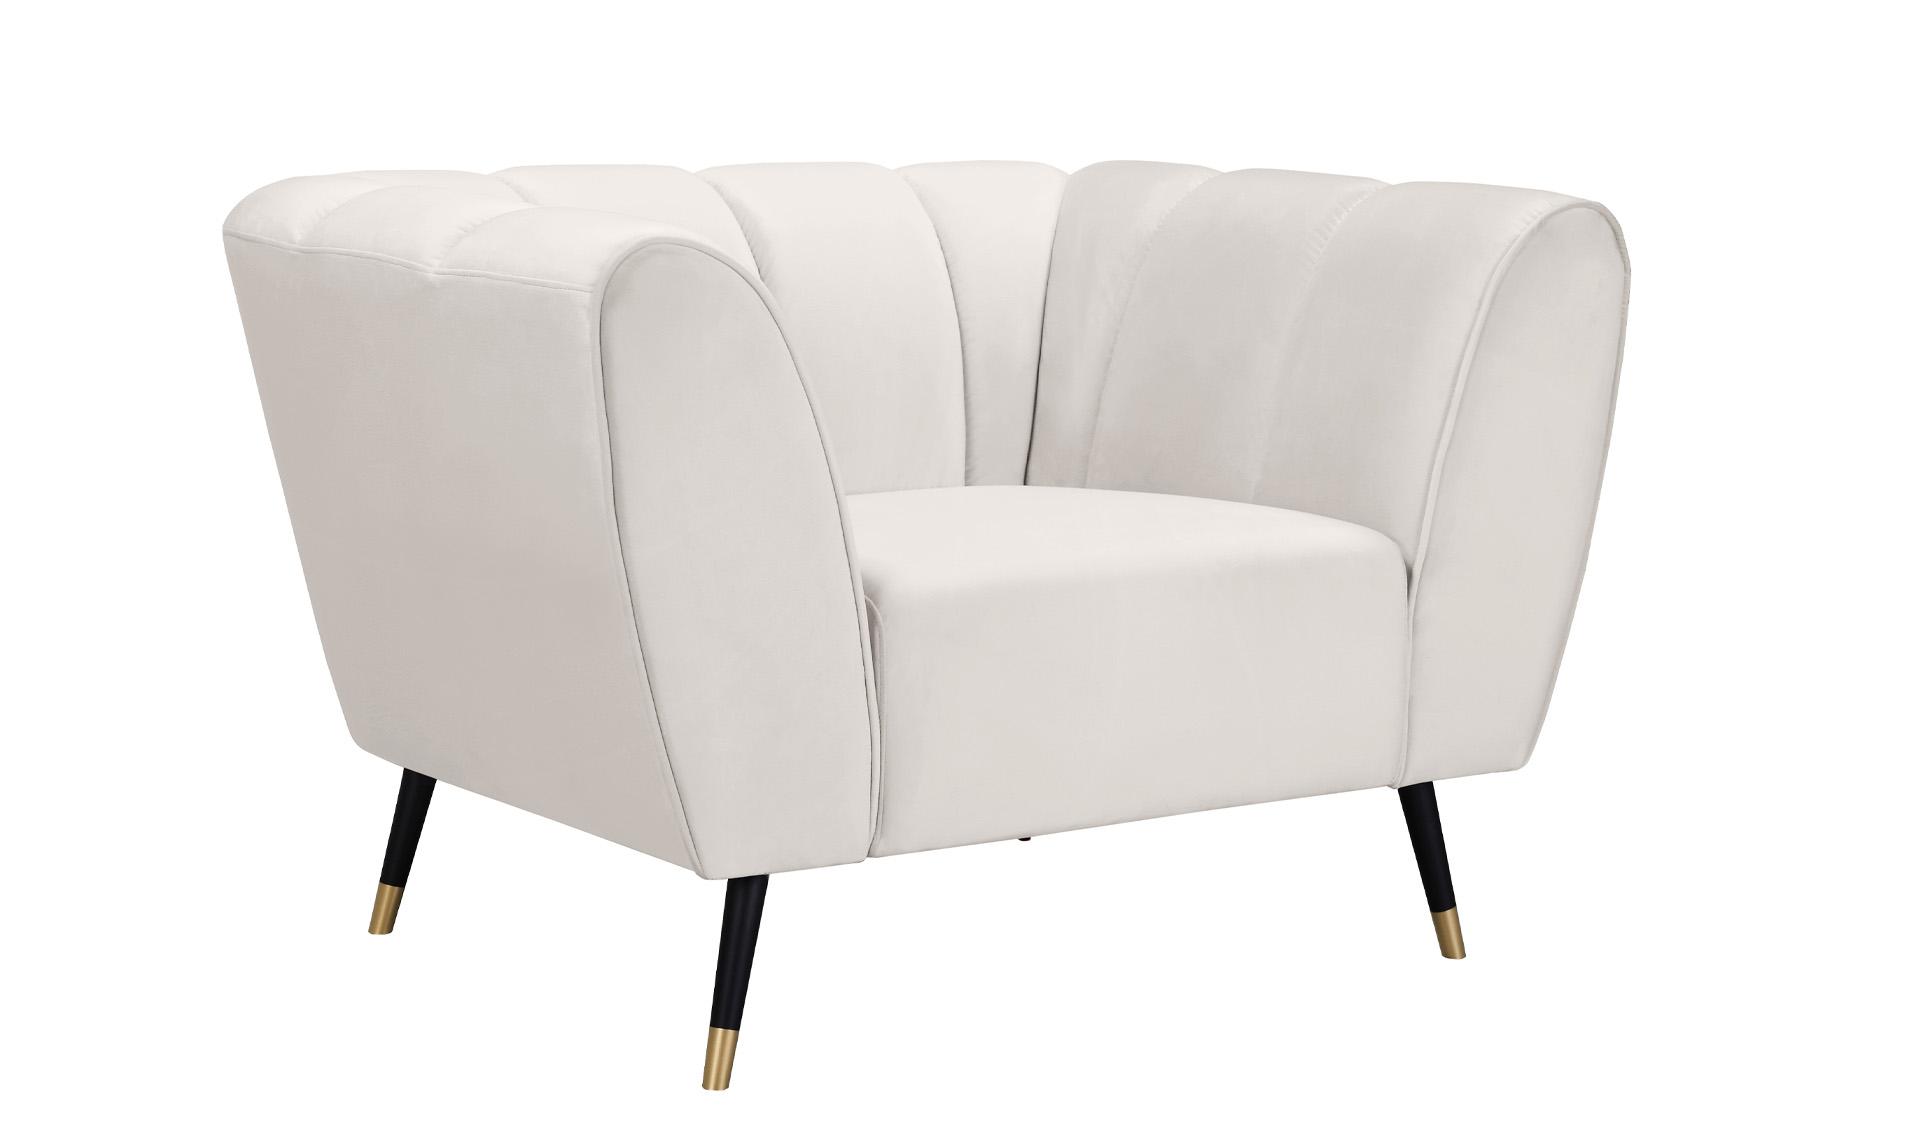 Contemporary, Modern Arm Chair BEAUMONT 626Cream-C 626Cream-C in Cream Velvet